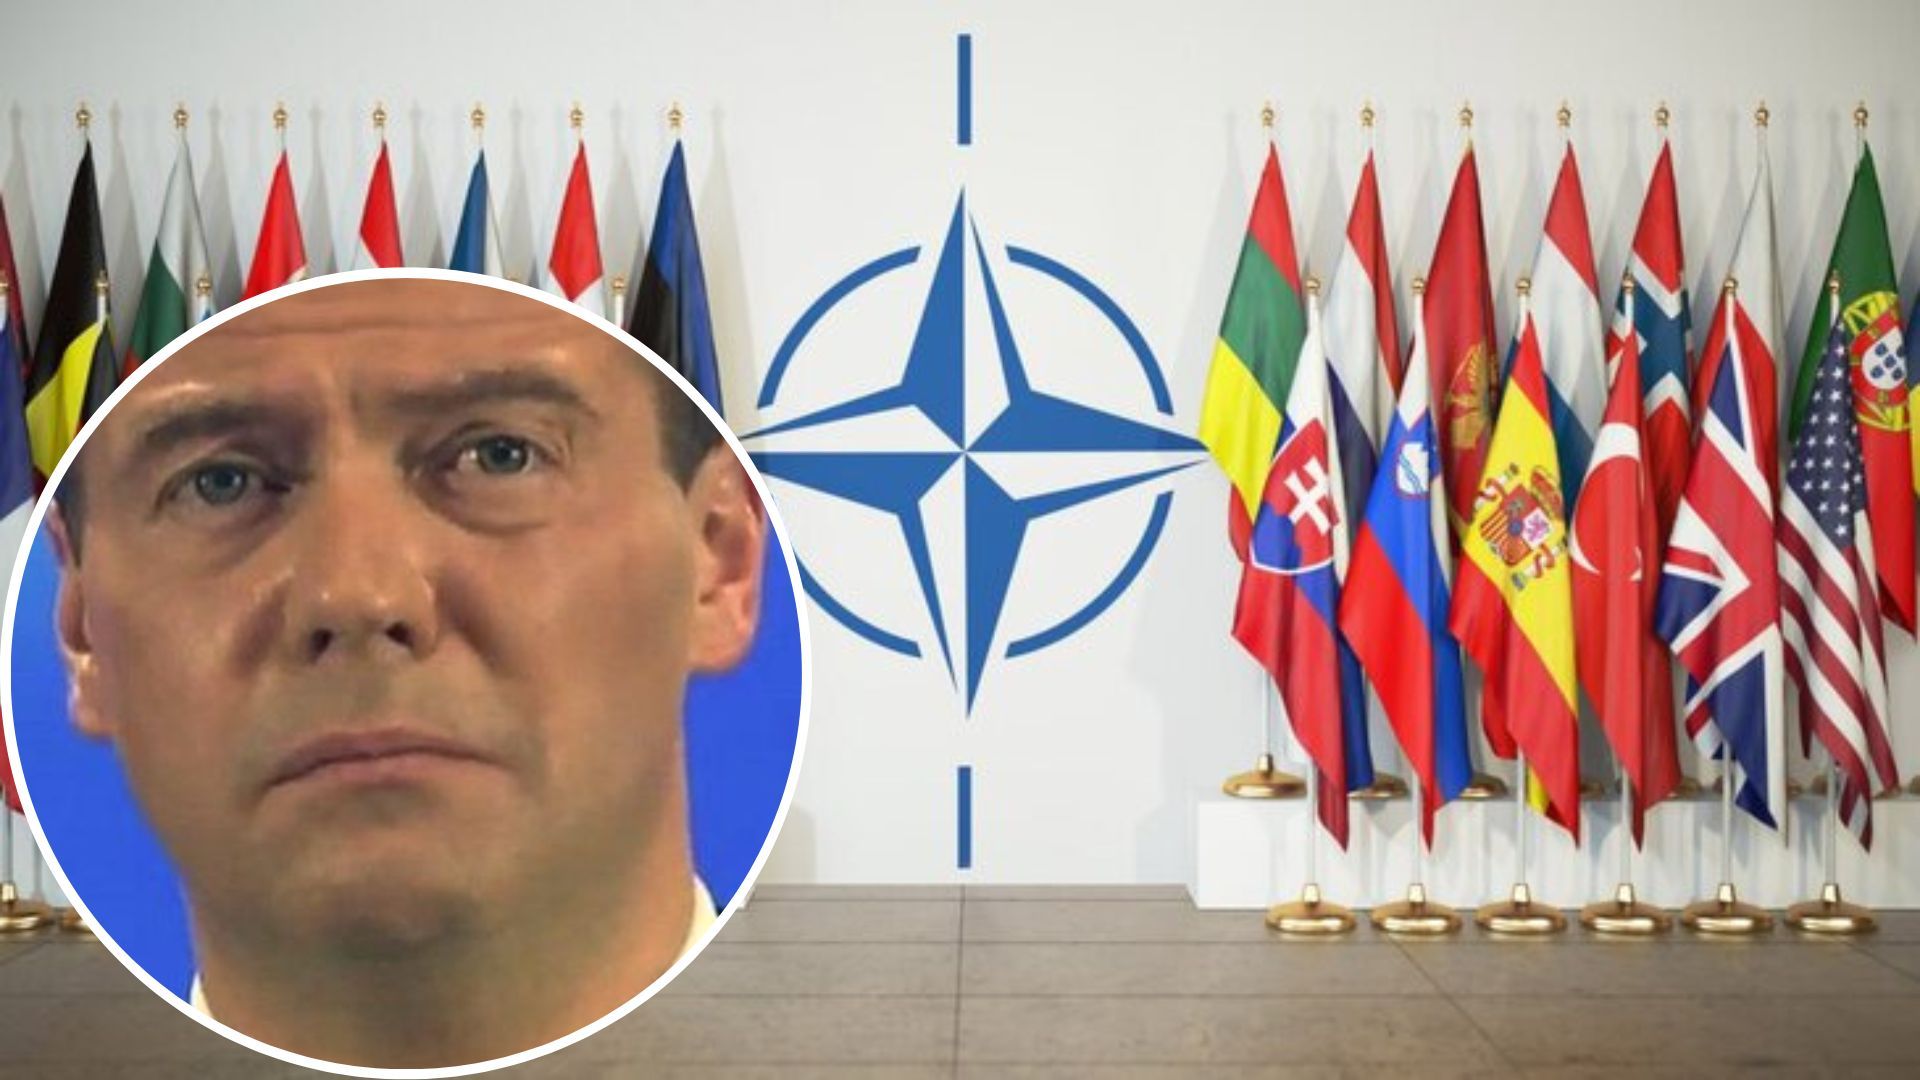 Медведев истерически призвал НАТО распуститься и покаяться